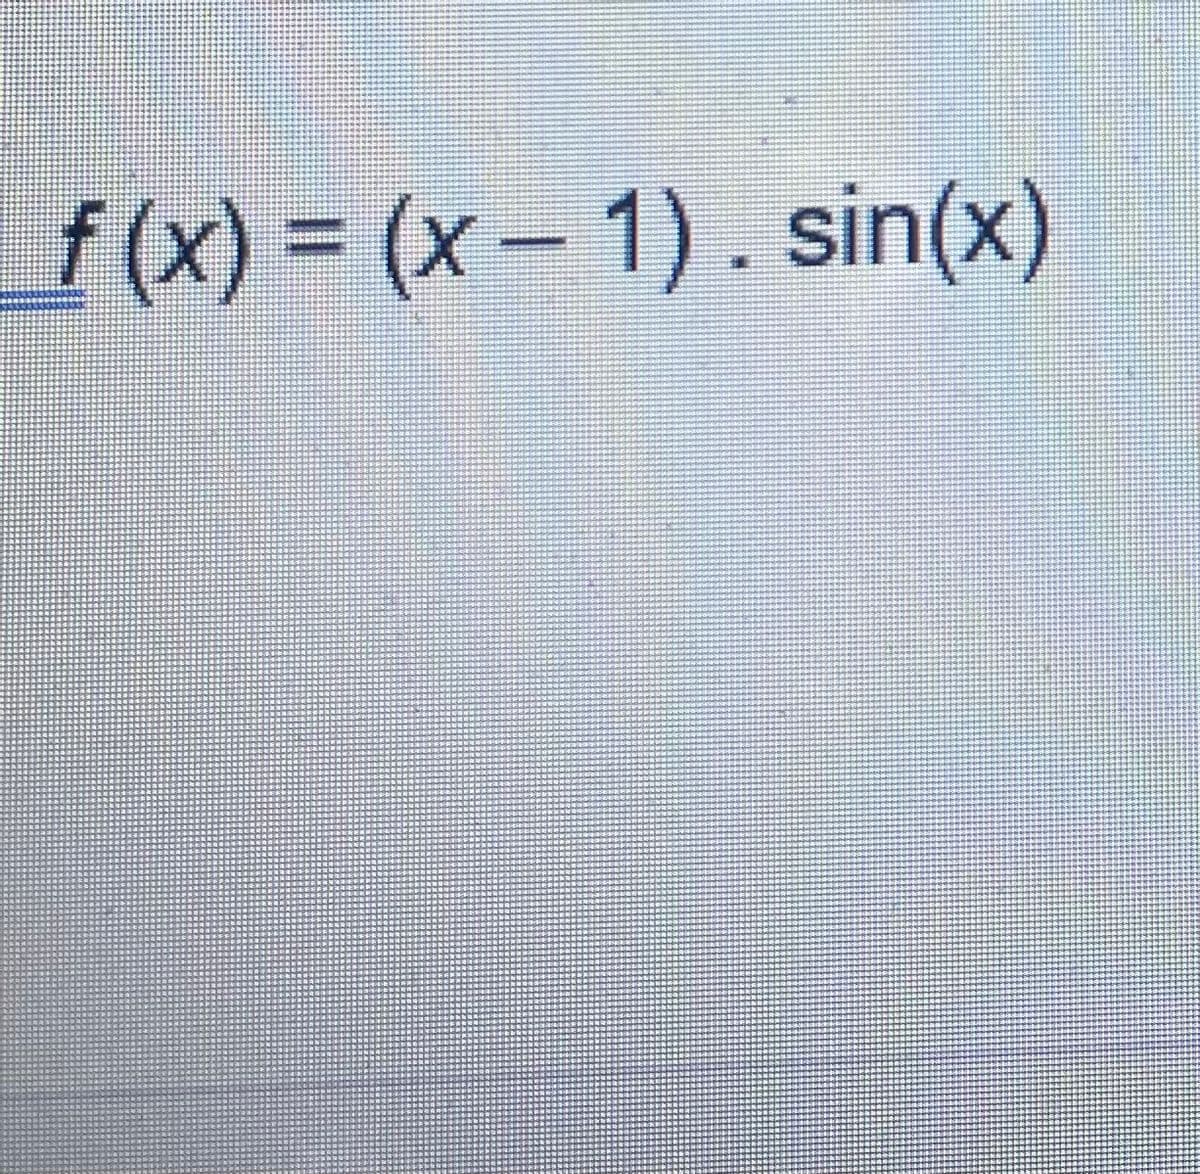 f(x) = (x- 1). sin(x)
